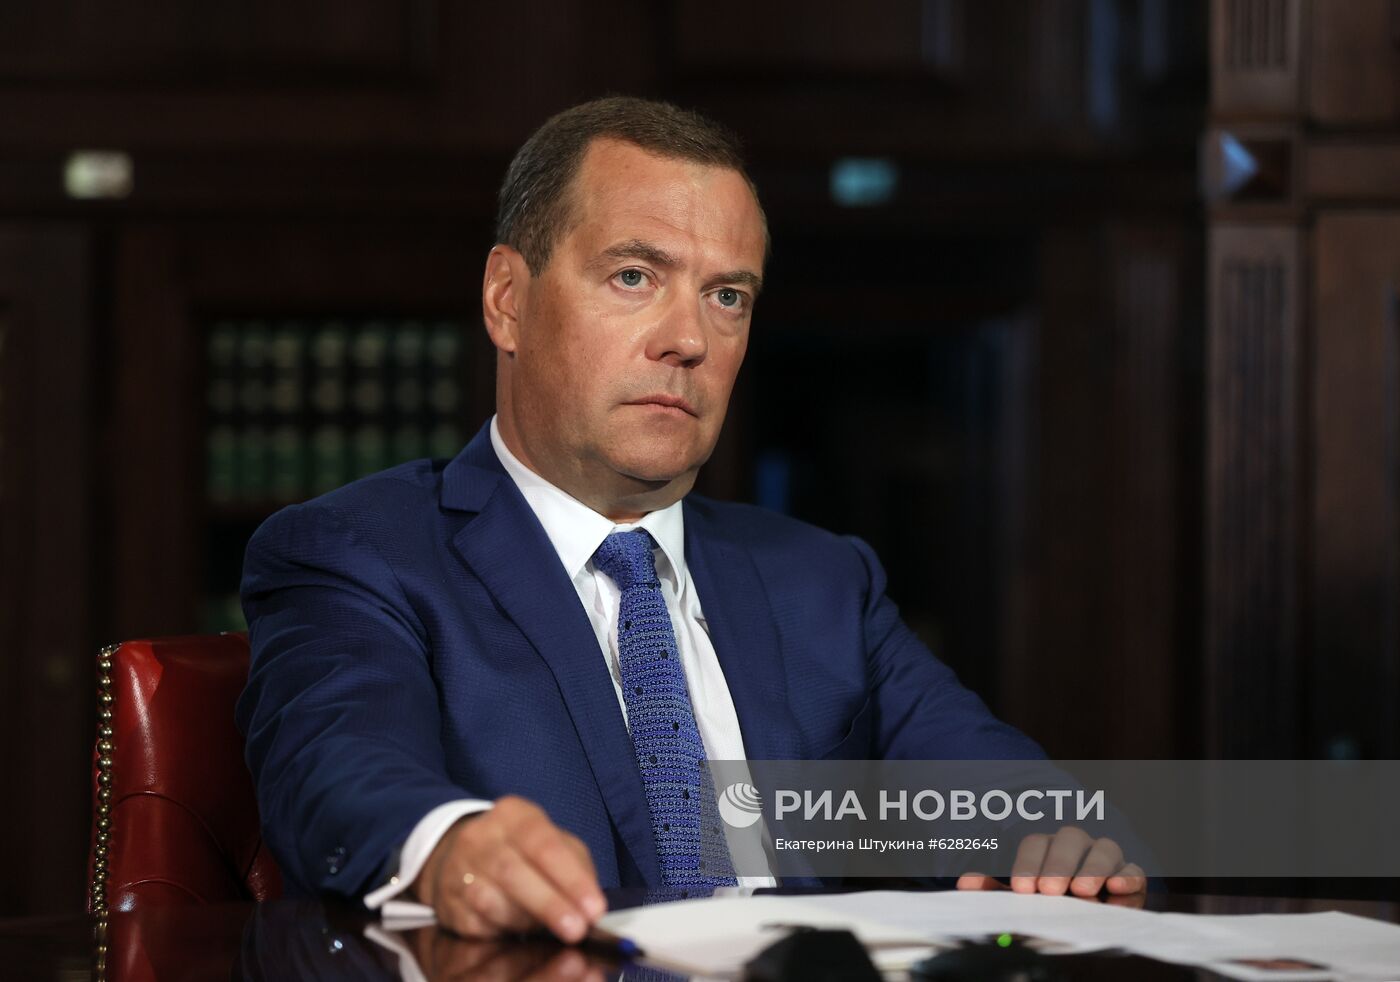 Заместитель председателя Совбеза РФ Д. Медведев дал интервью ИД "Комсомольская правда"